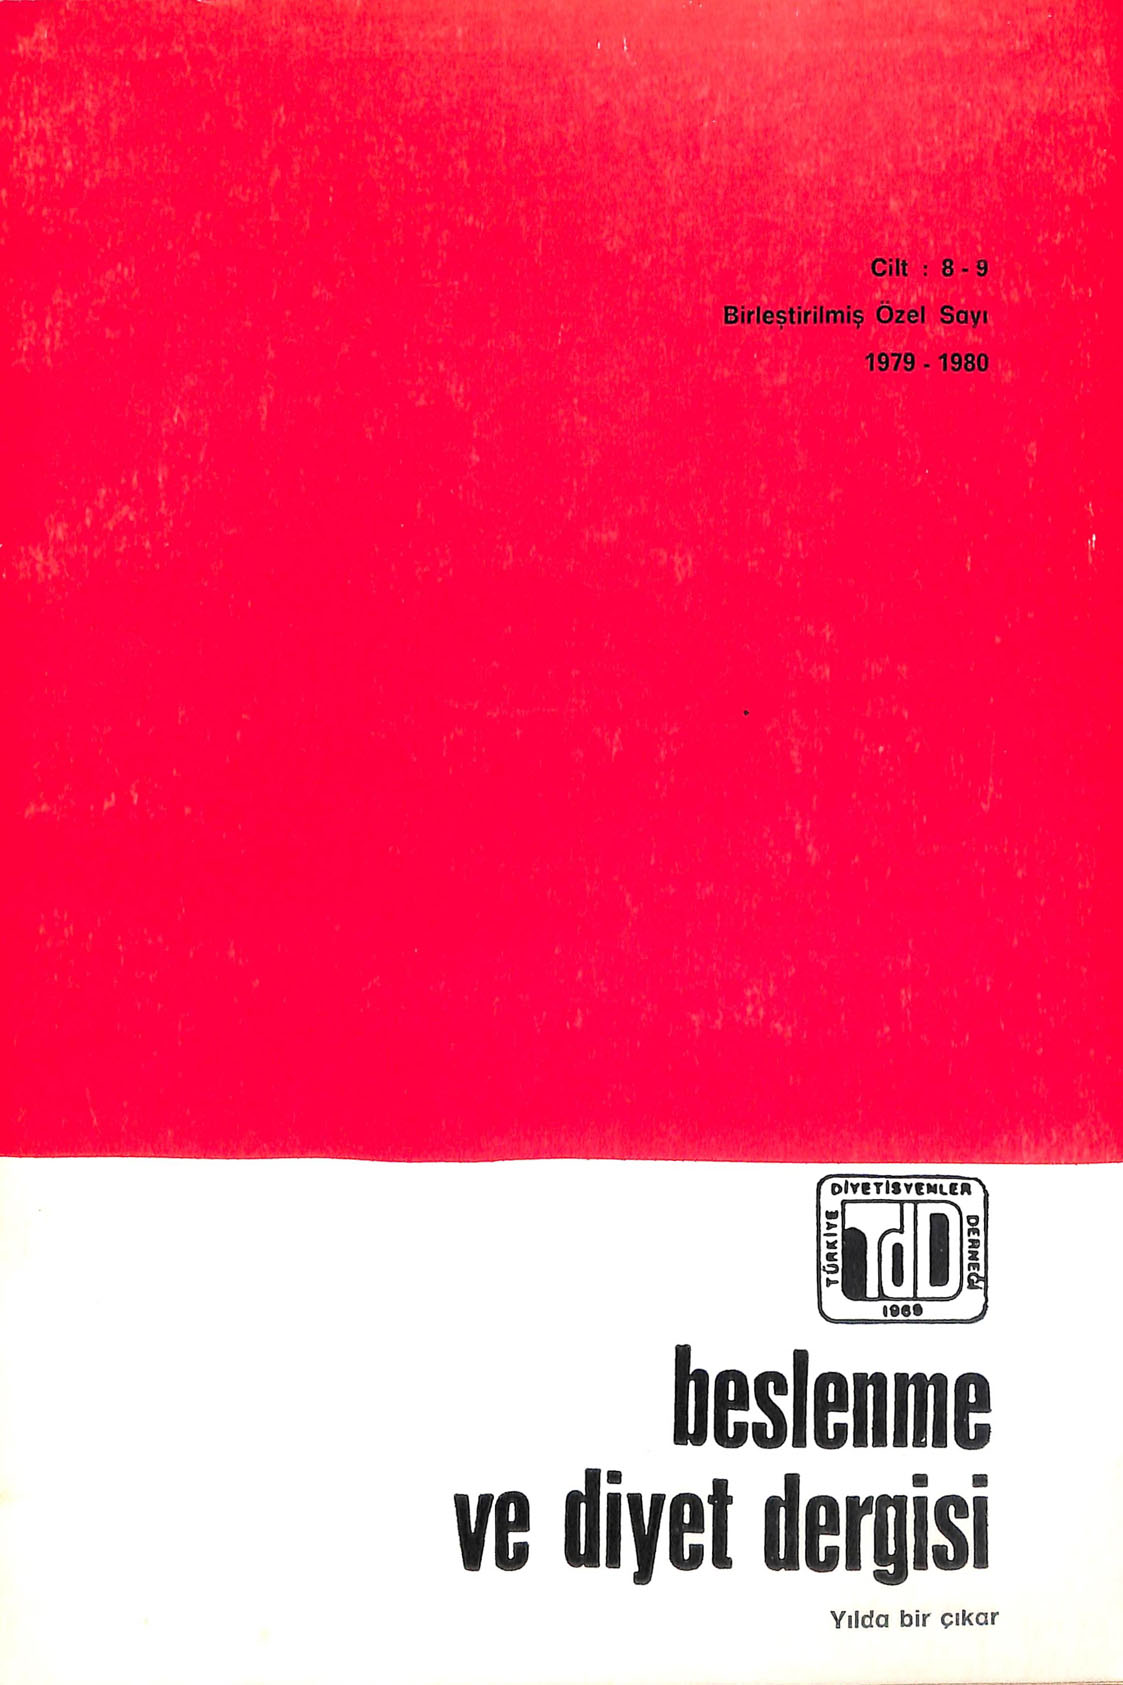 					View Vol. 9 (1980)
				